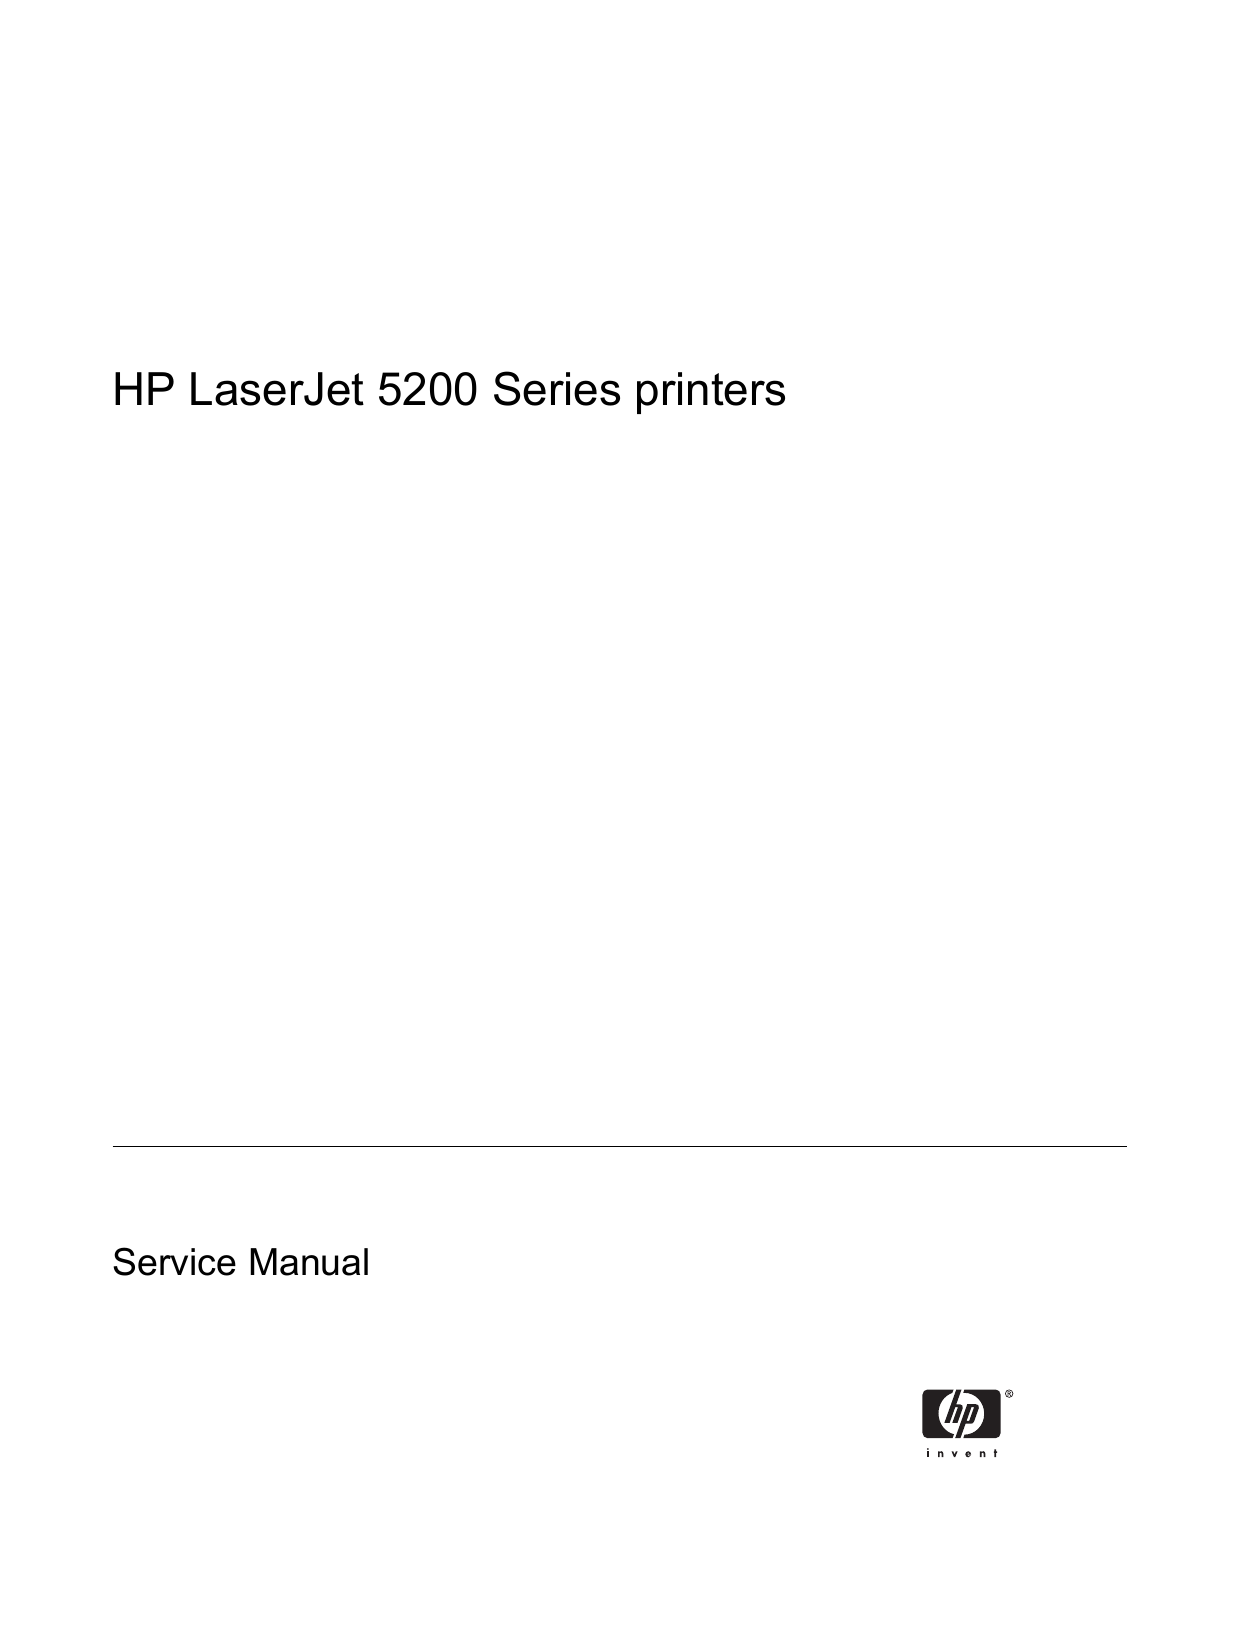 HP Laser Jet 5200 laser printer service guide Preview image 3